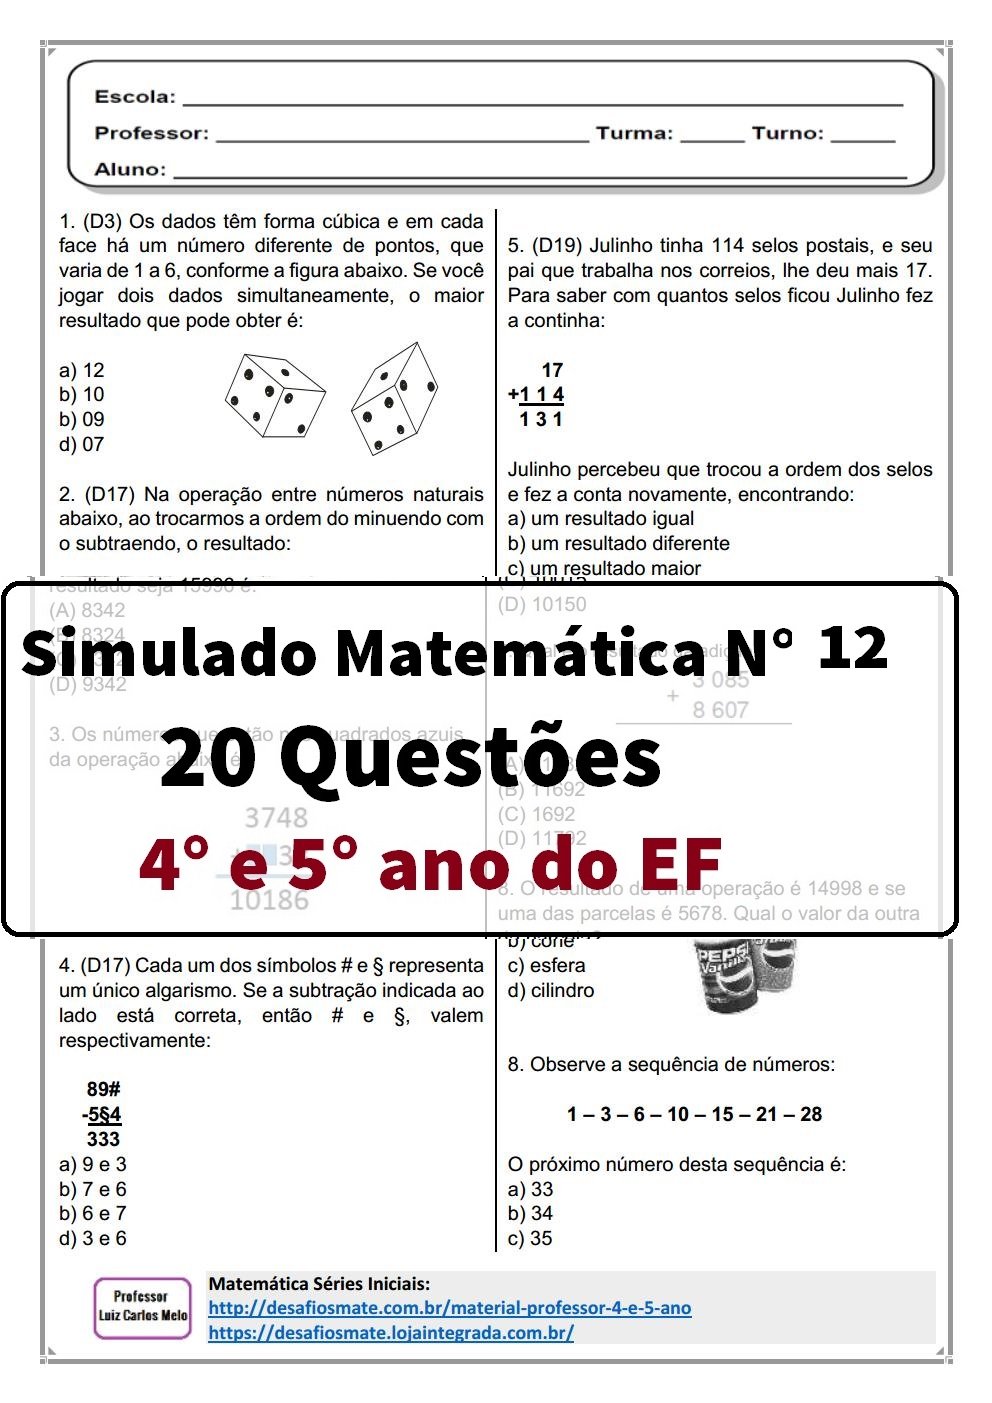 Simulado 12 Prof. Luiz Carlos Melojpg Page1